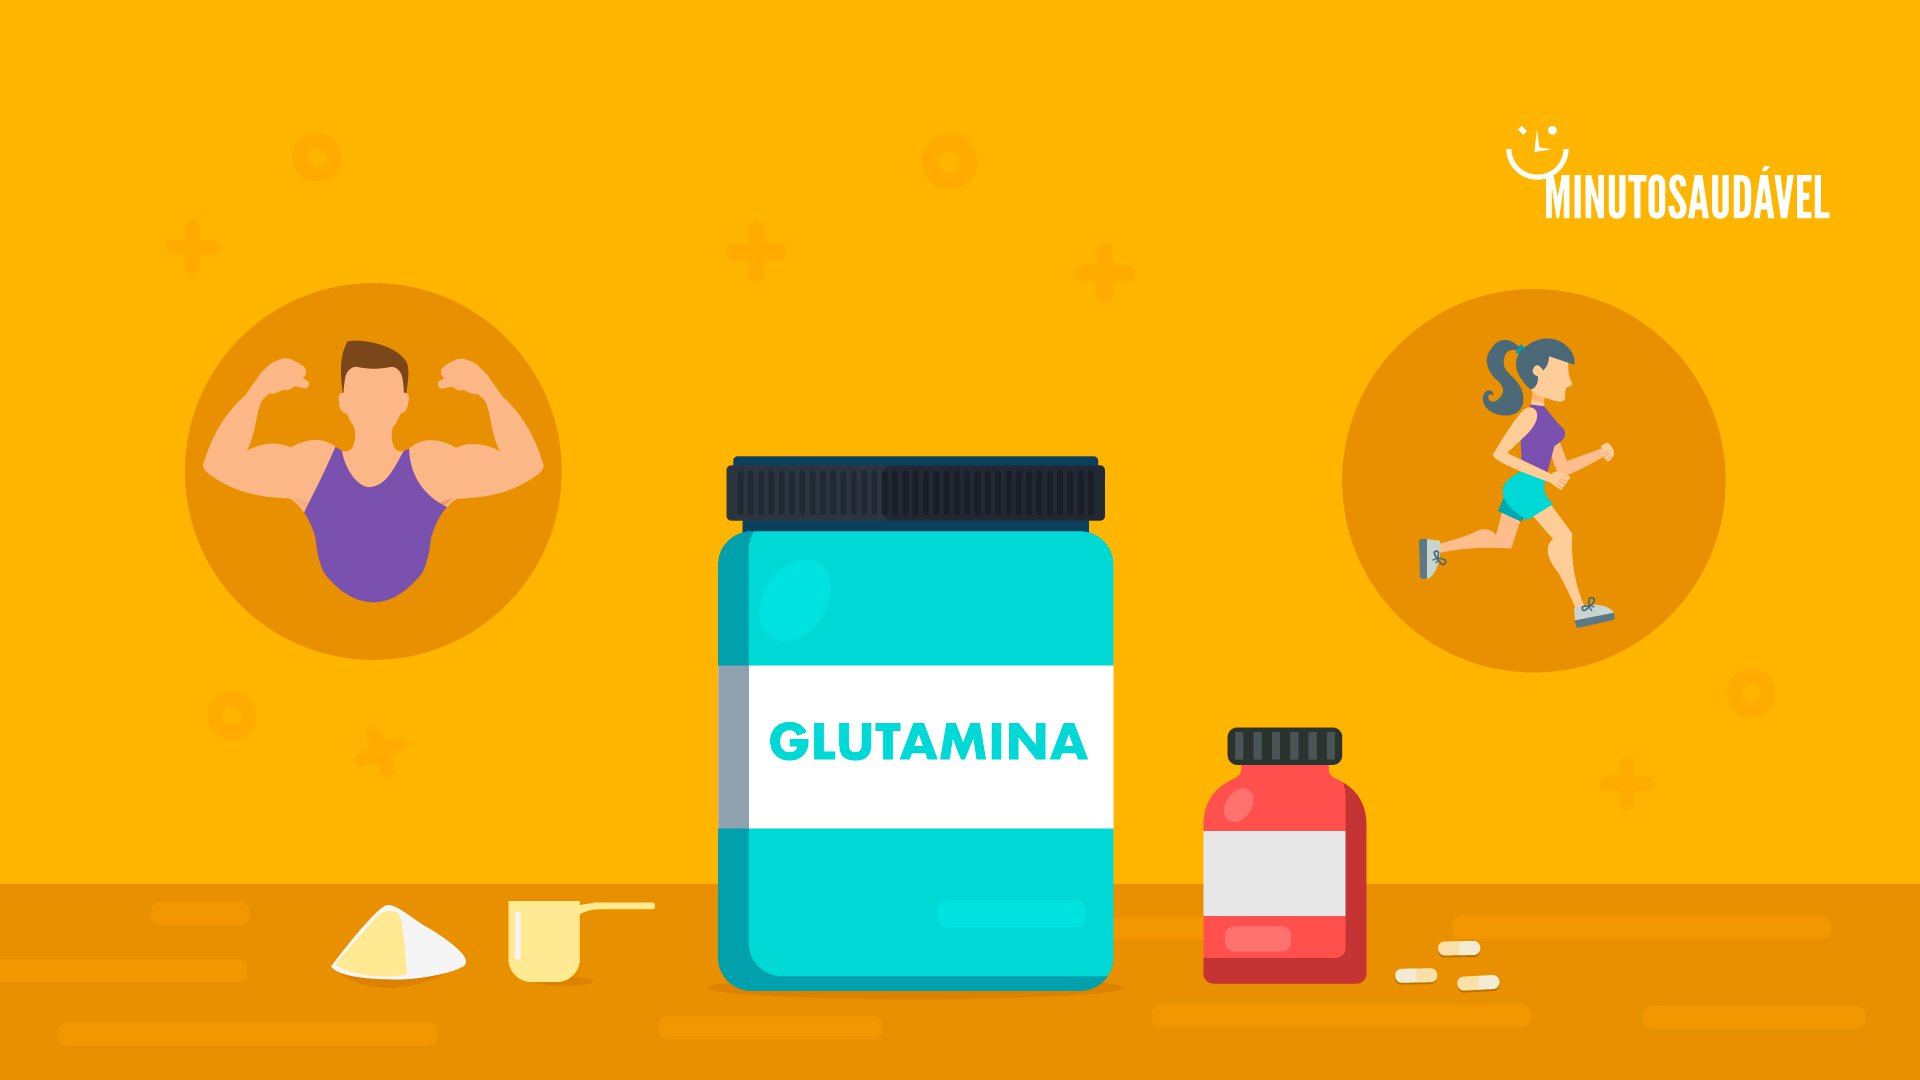 Foto de capa do artigo "Glutamina: para que serve, benefícios, como tomar e preço"